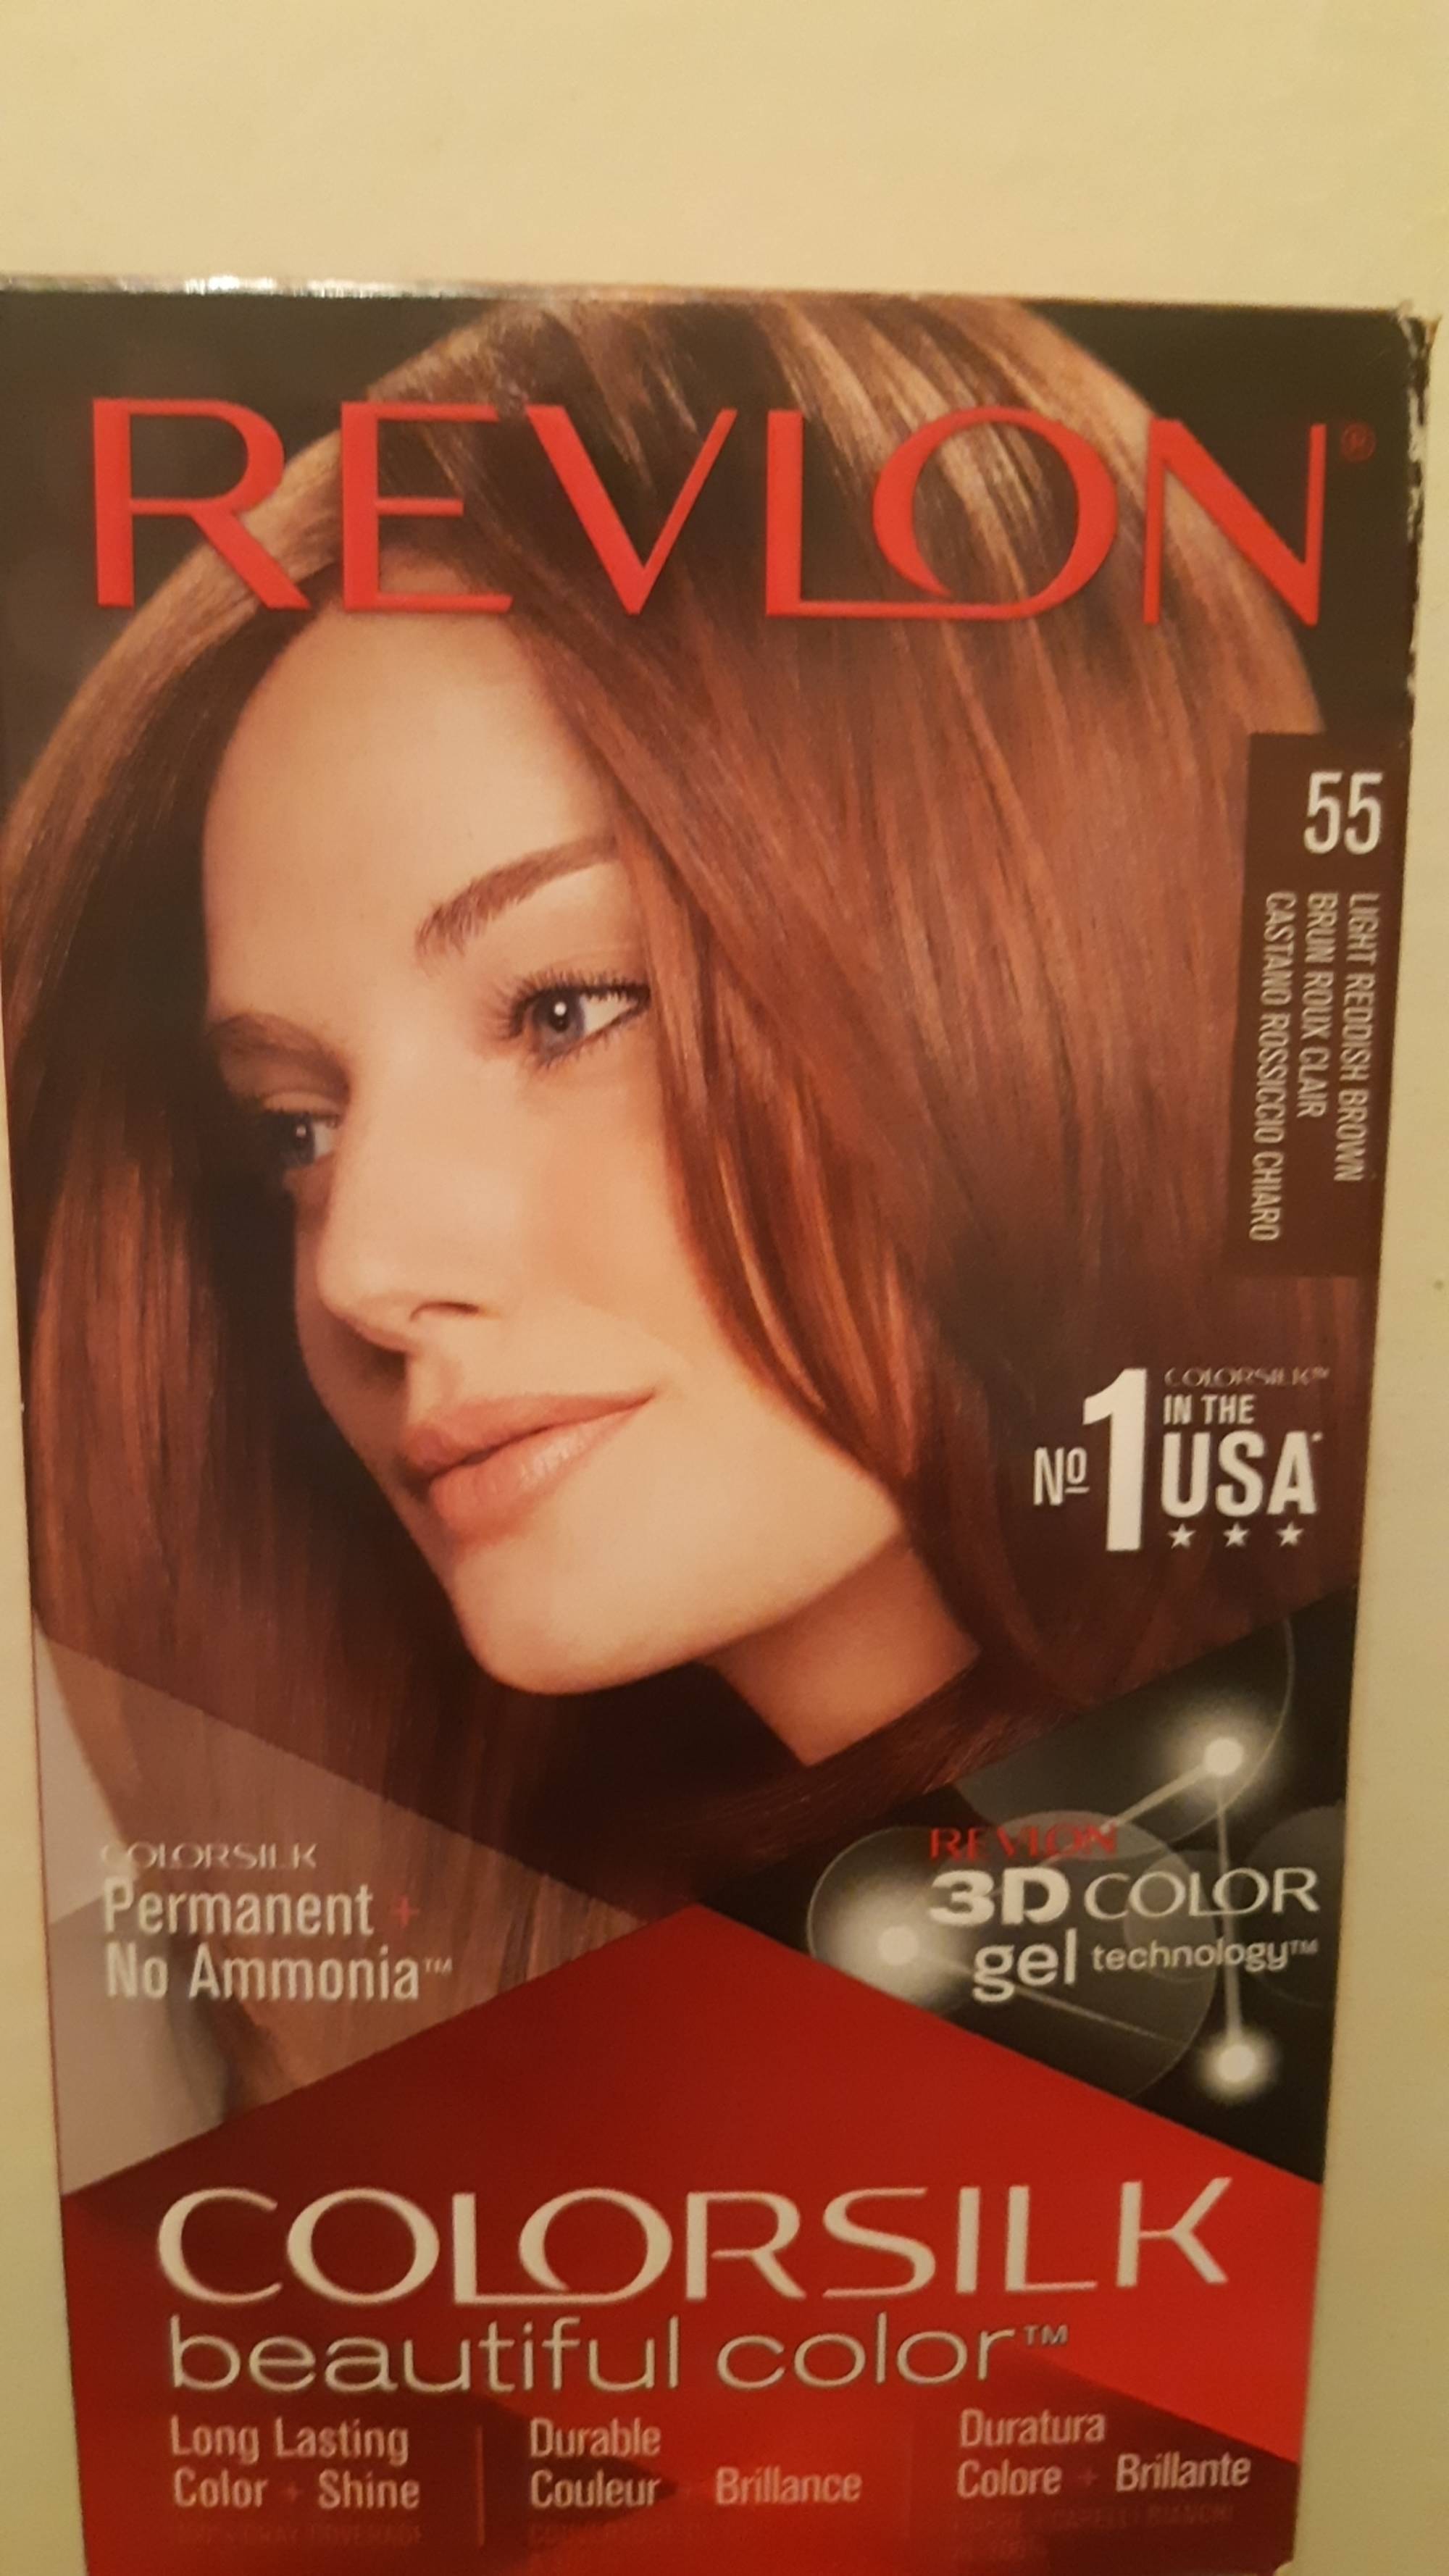 REVLON - Colorsilk beautiful color - 3D color gel - 55 brun roux clair